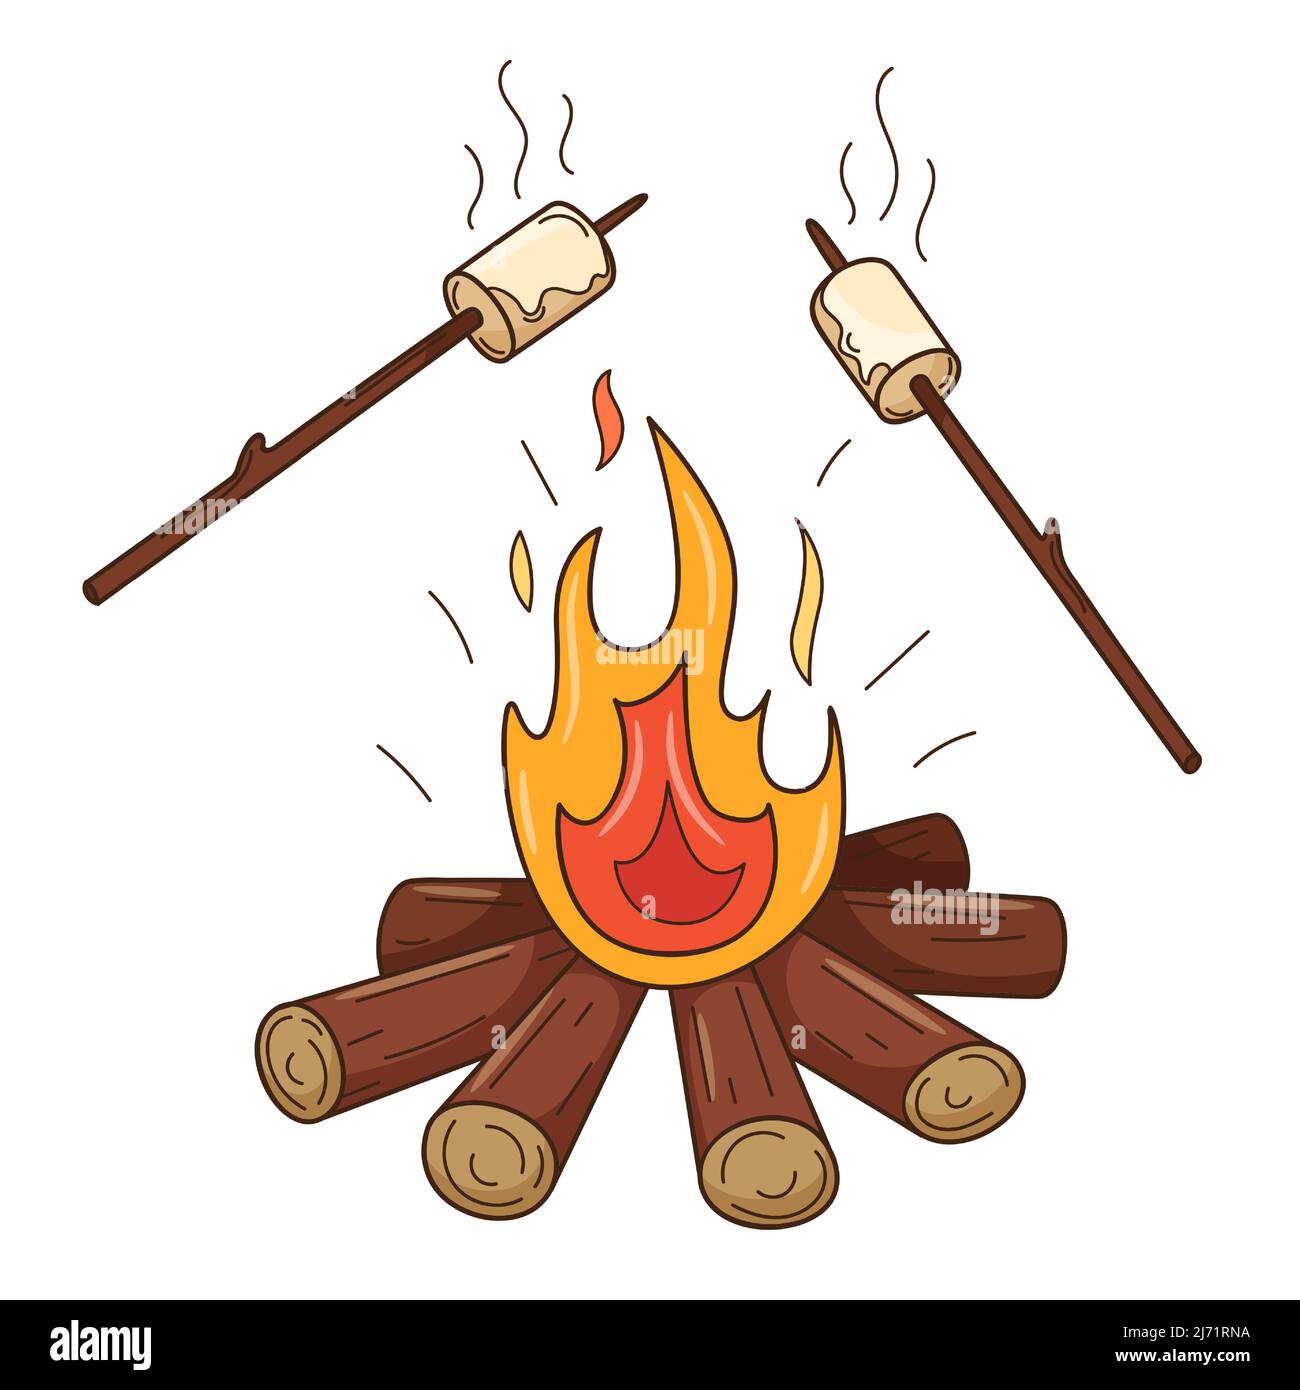 Les guimauves sont frites sur le feu. Un feu de bois. Divertissement d'automne. Élément décoratif avec contour. Doodle, dessiné à la main. Conception plate. Illustration de Vecteur